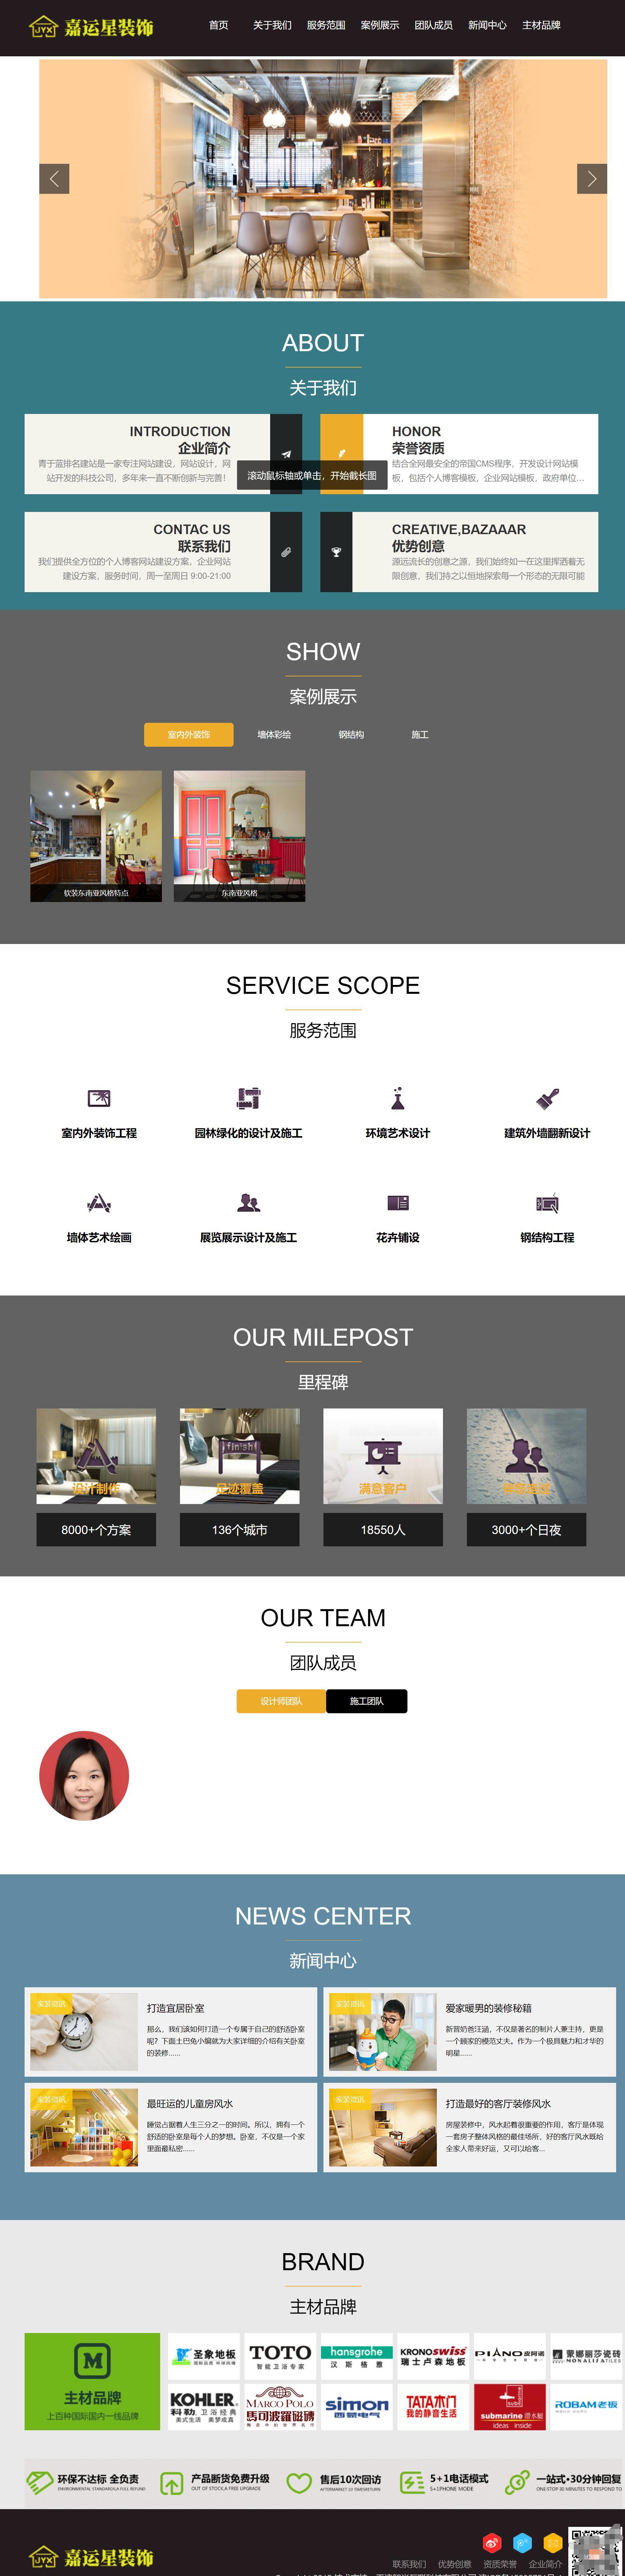 企业网站模板的首页设计.jpg/